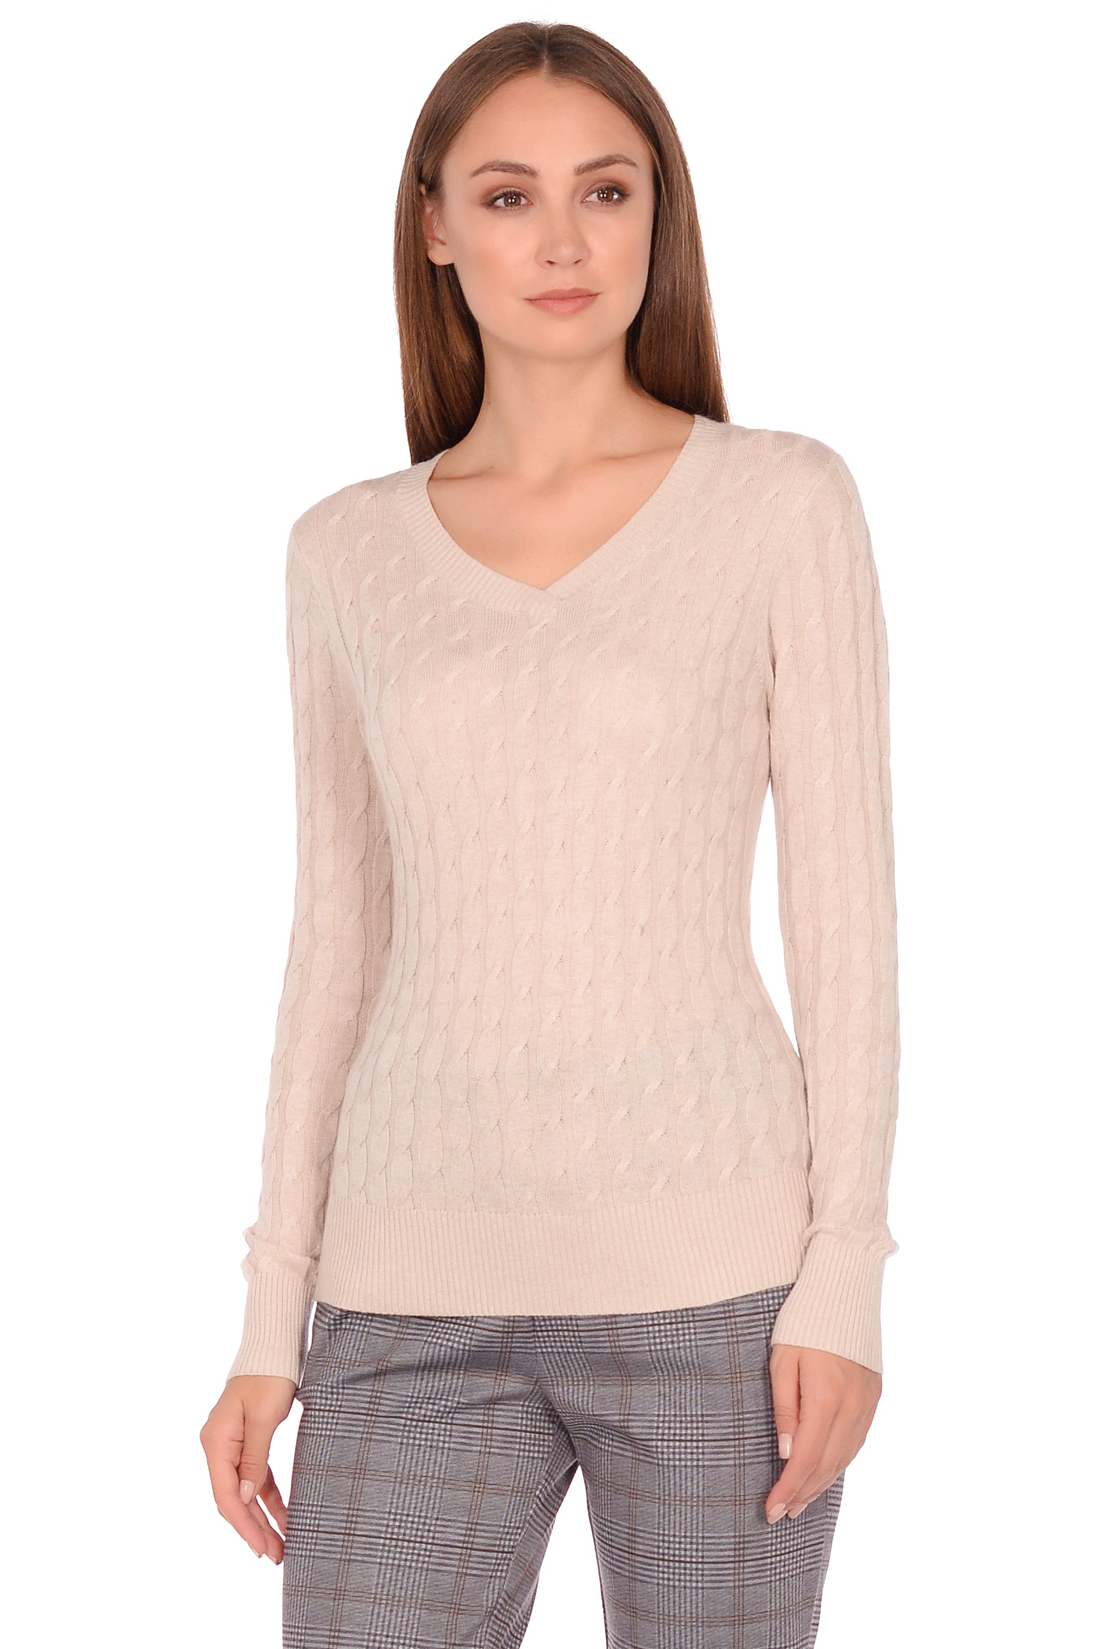 Базовый пуловер с узором и ангорой (арт. baon B138703), размер XXL, цвет серый Базовый пуловер с узором и ангорой (арт. baon B138703) - фото 1